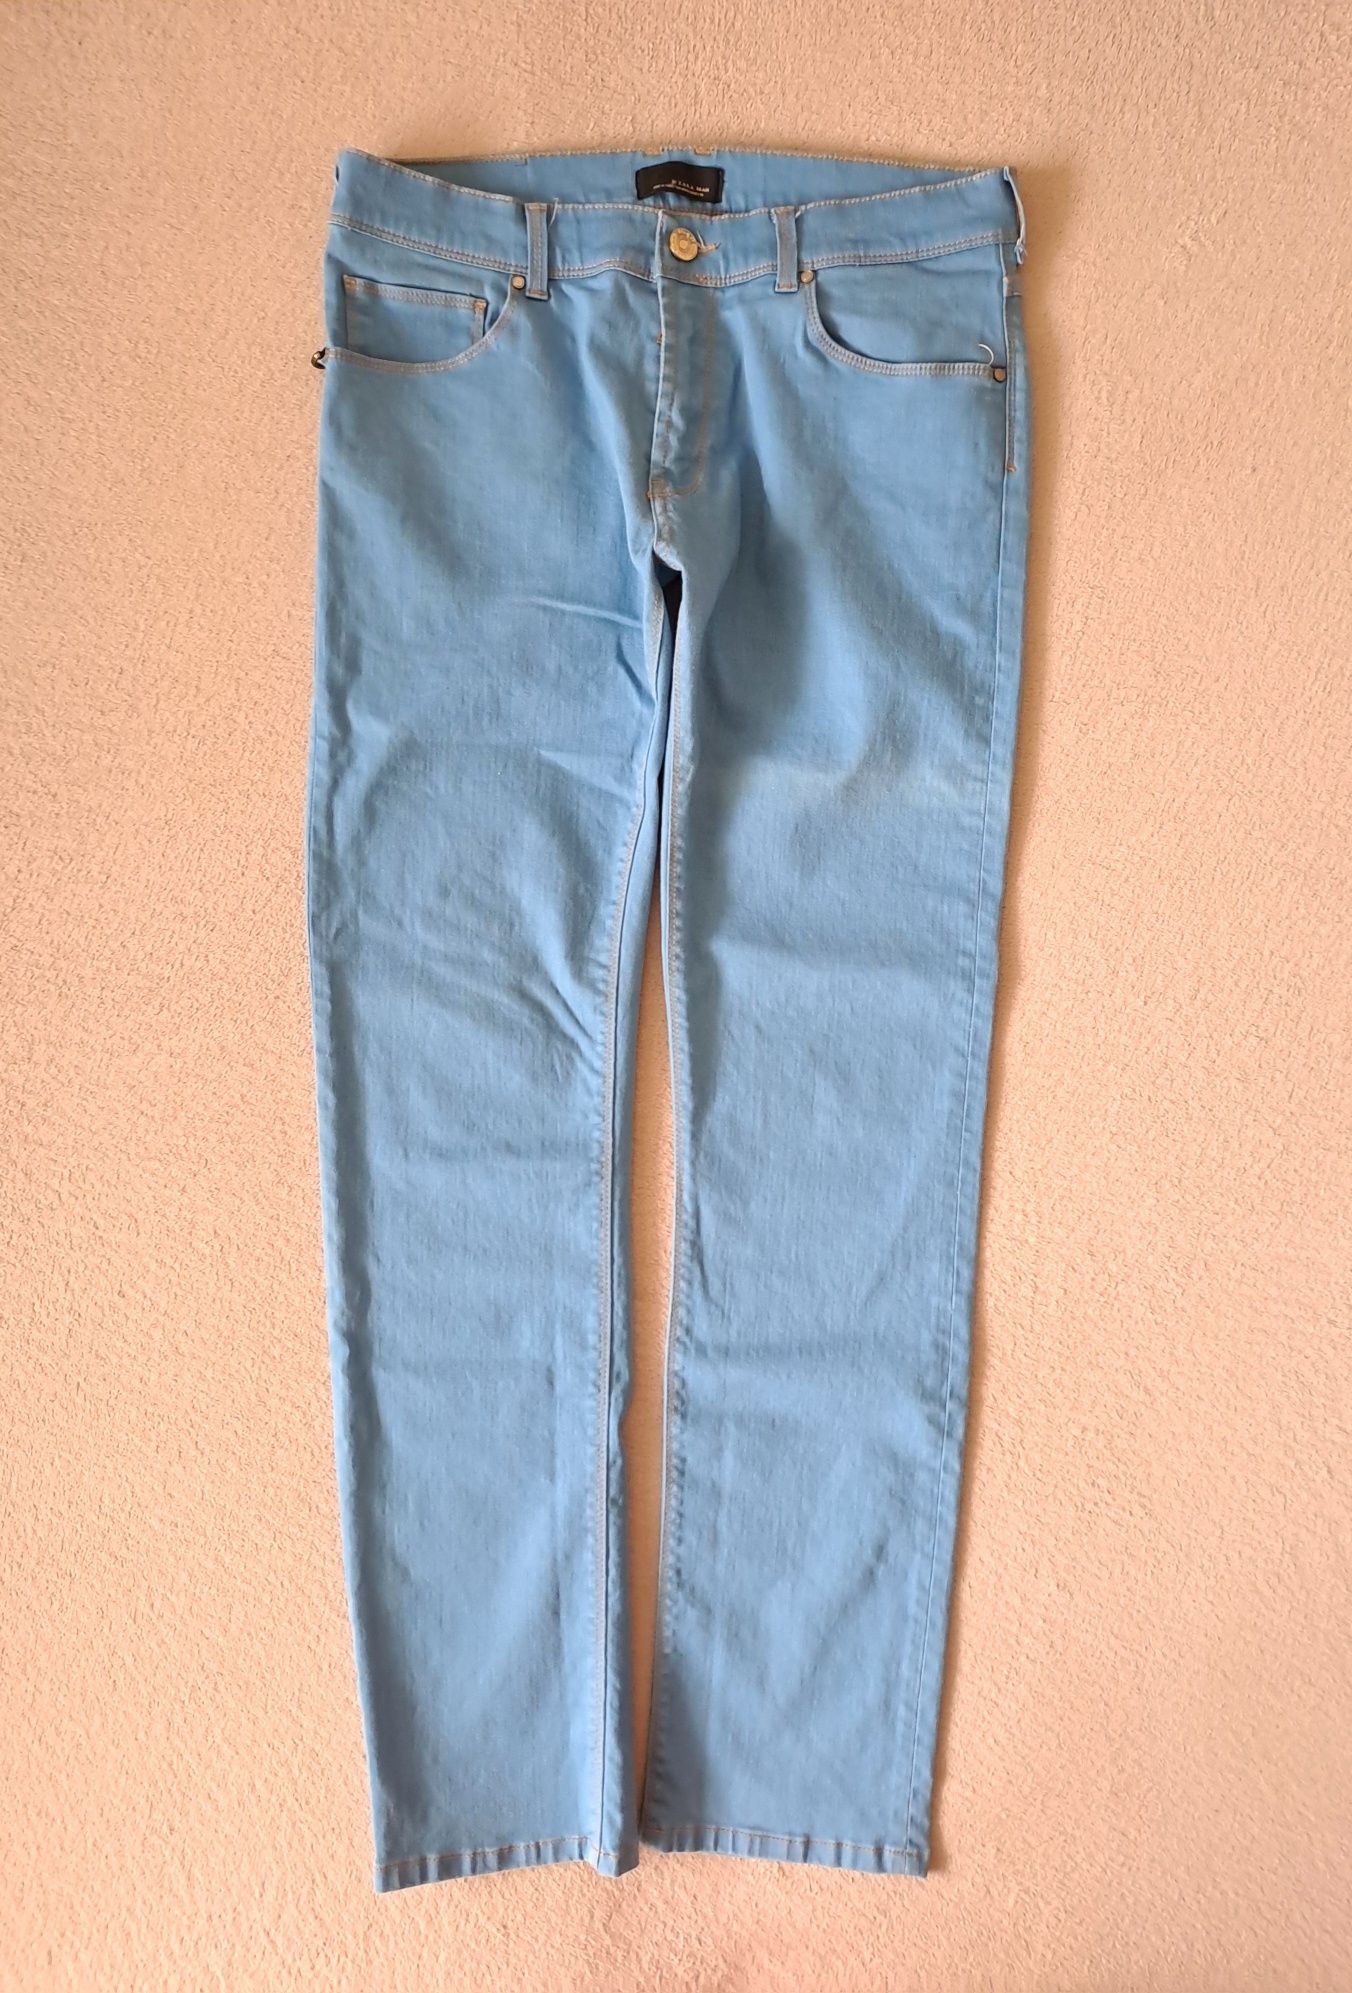 jeansy ZARA roz. 34/34 styl klasyka moda komfort